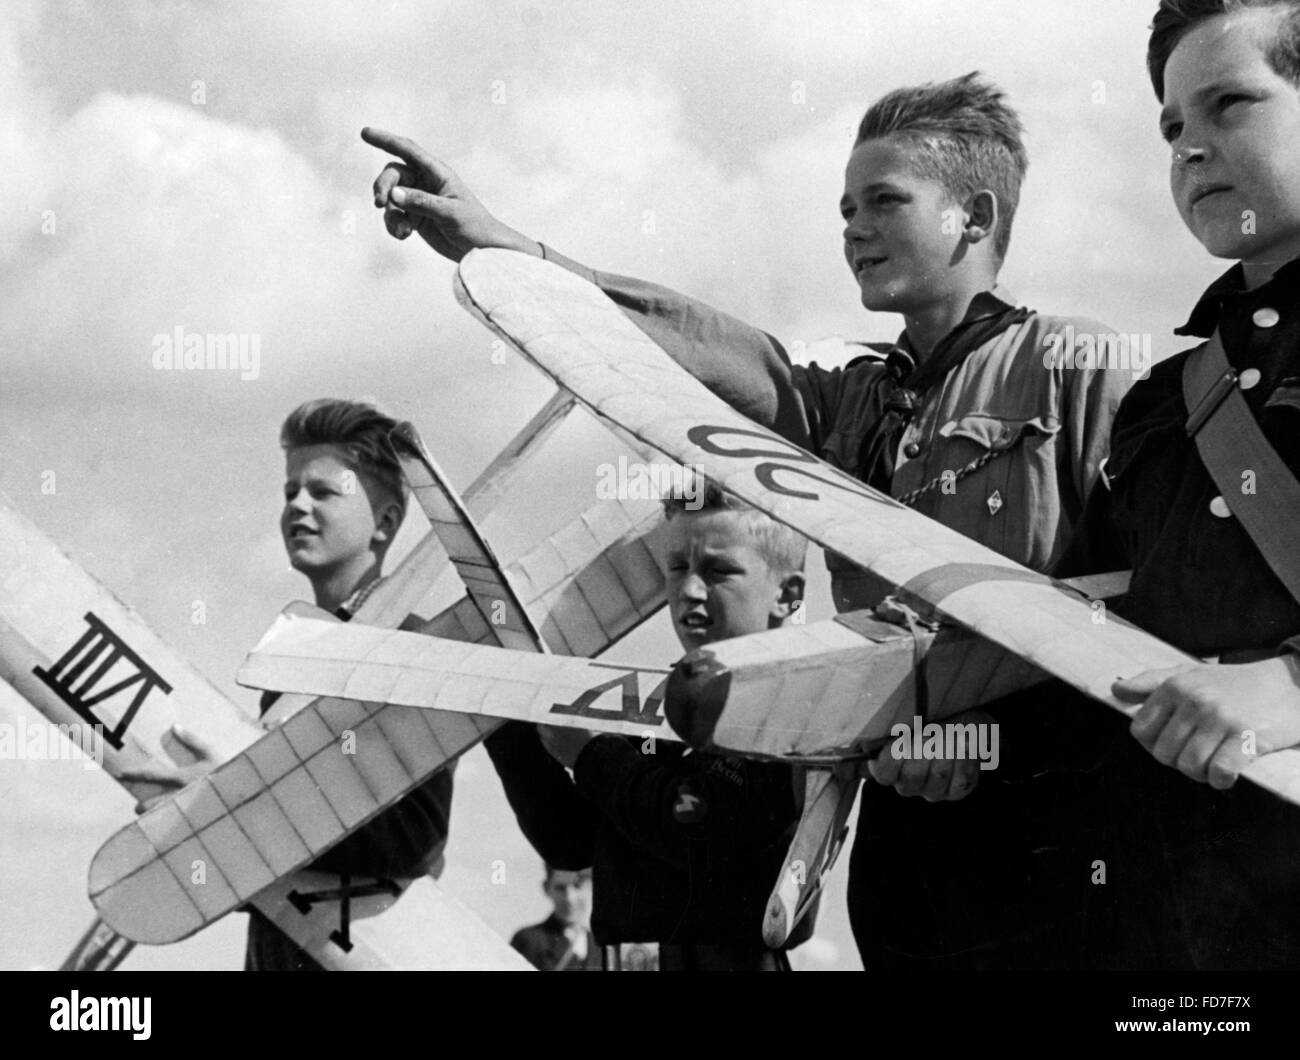 HJ miembros con modelos de aviones, 1940 Foto de stock